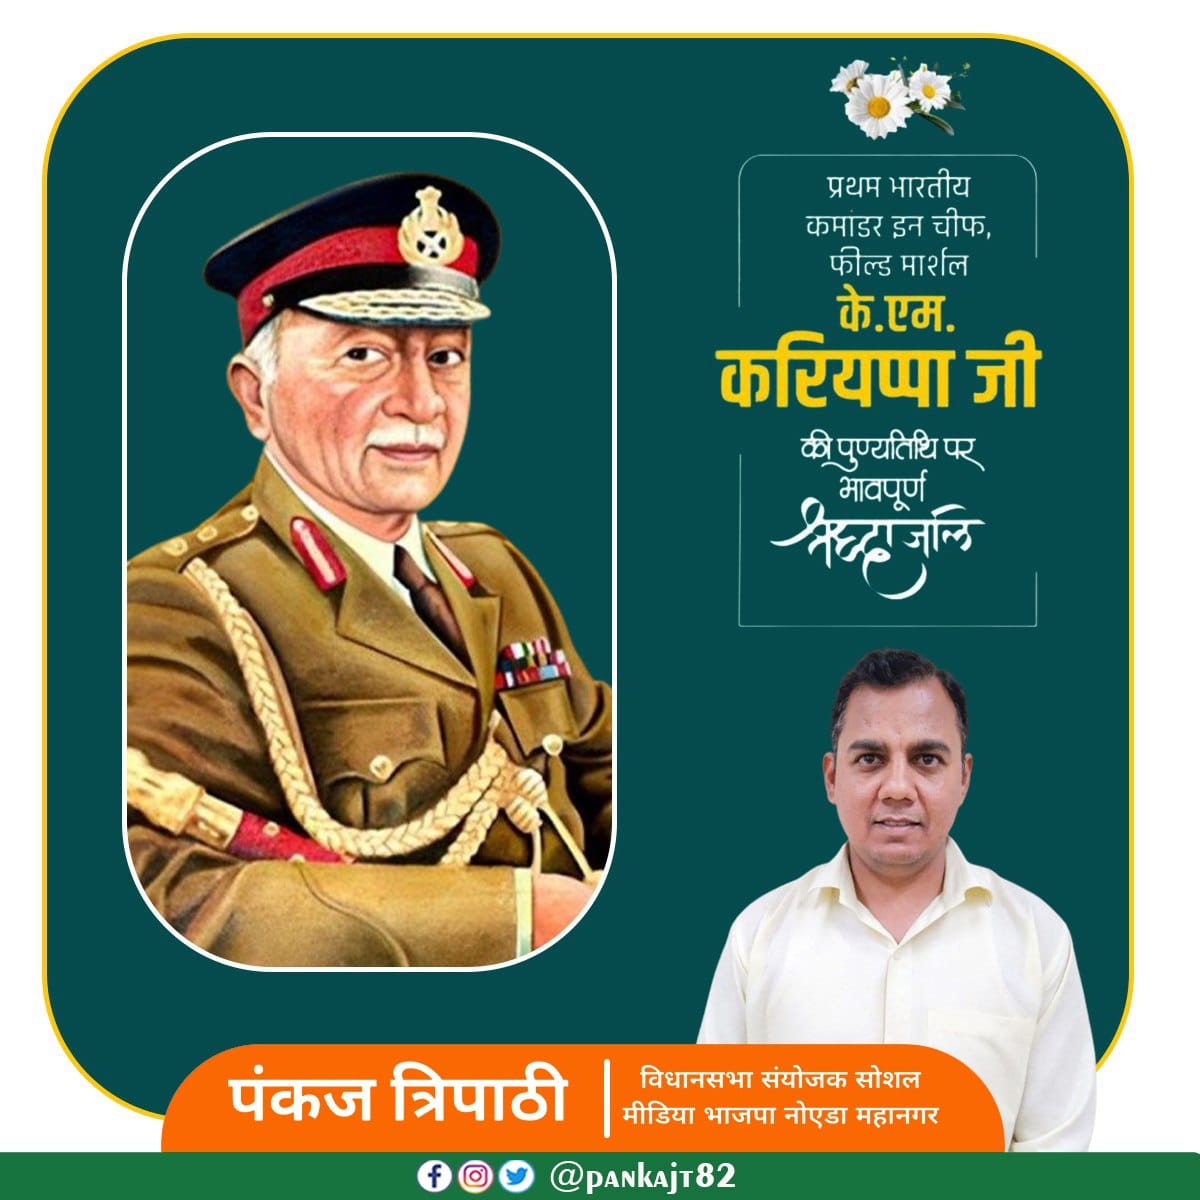 भारत के पहले कमांडर-इन-चीफ, जिन्होंने देश और भारतीय फौज को अपनी मनोबल शक्ति से गौरवान्वित किया। उन्होंने 1947 में भारत-पाक युद्ध के दौरान पश्चिमी मोर्चे पर भारतीय सेना का नेतृत्व किया। फील्ड मार्शल के एम करियप्पा जी की पुण्यतिथि पर विनम्र श्रद्धांजलि। #IndianArmy